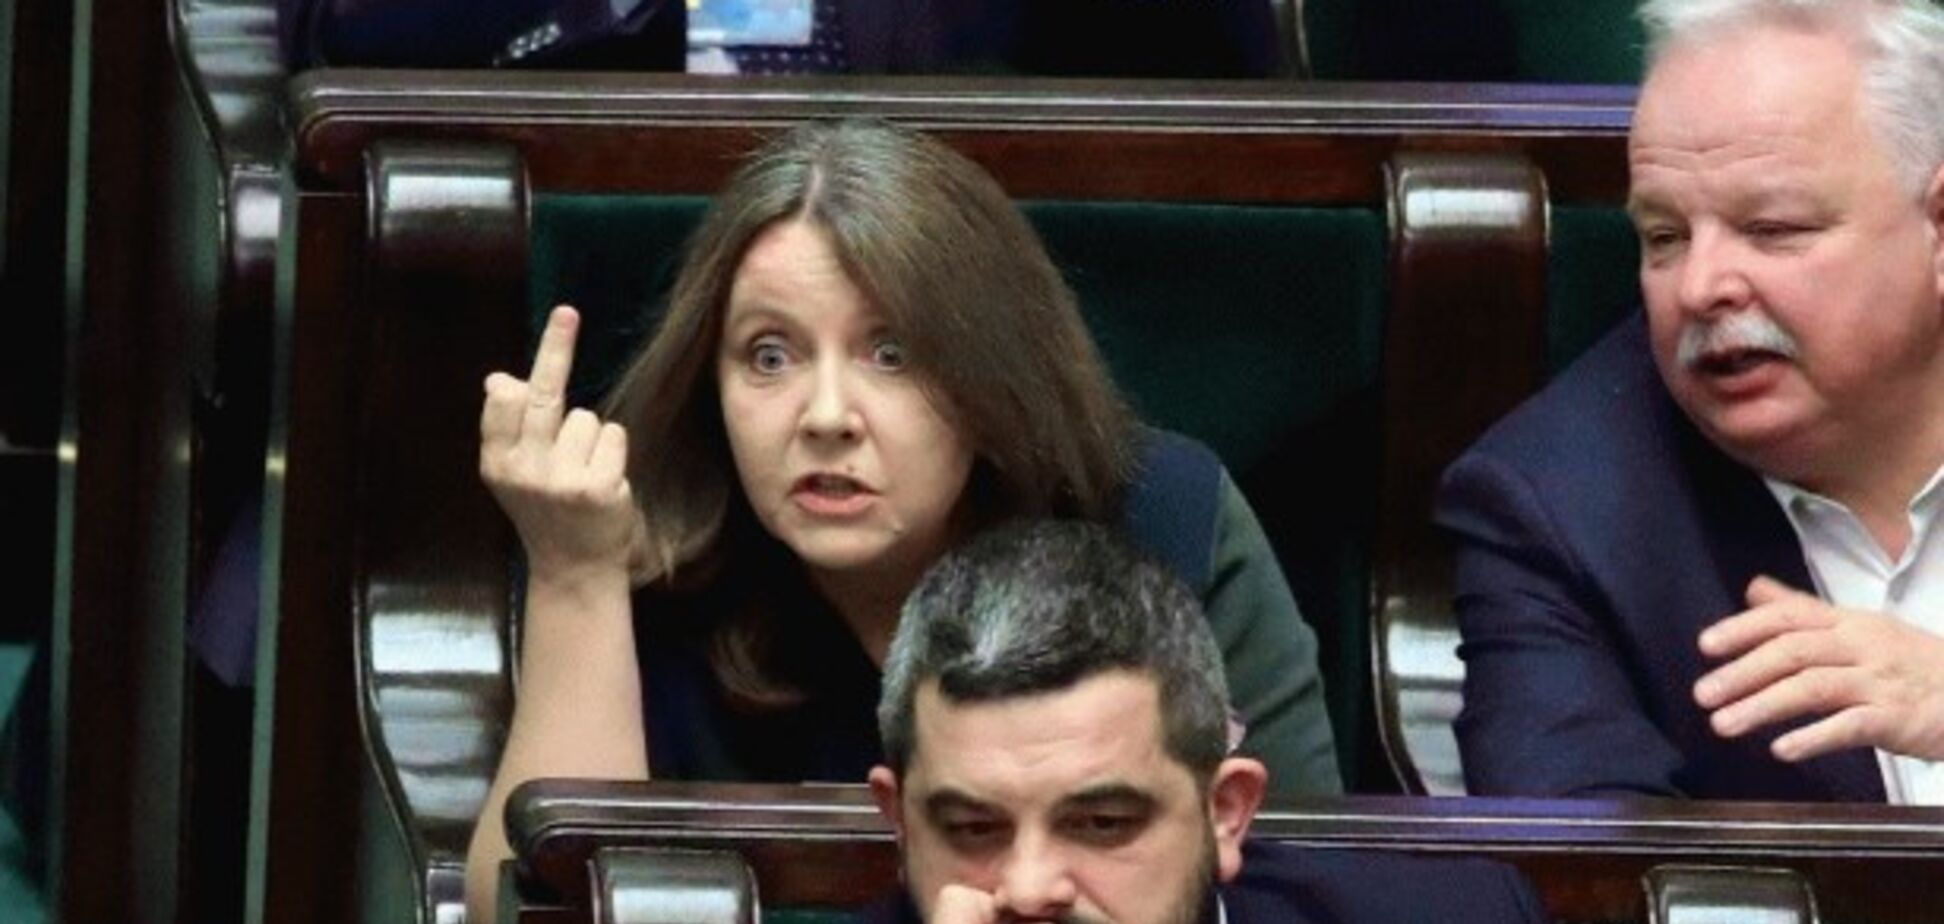 Показала средний палец: в Польше депутат публично оскандалилась. Фото и видео